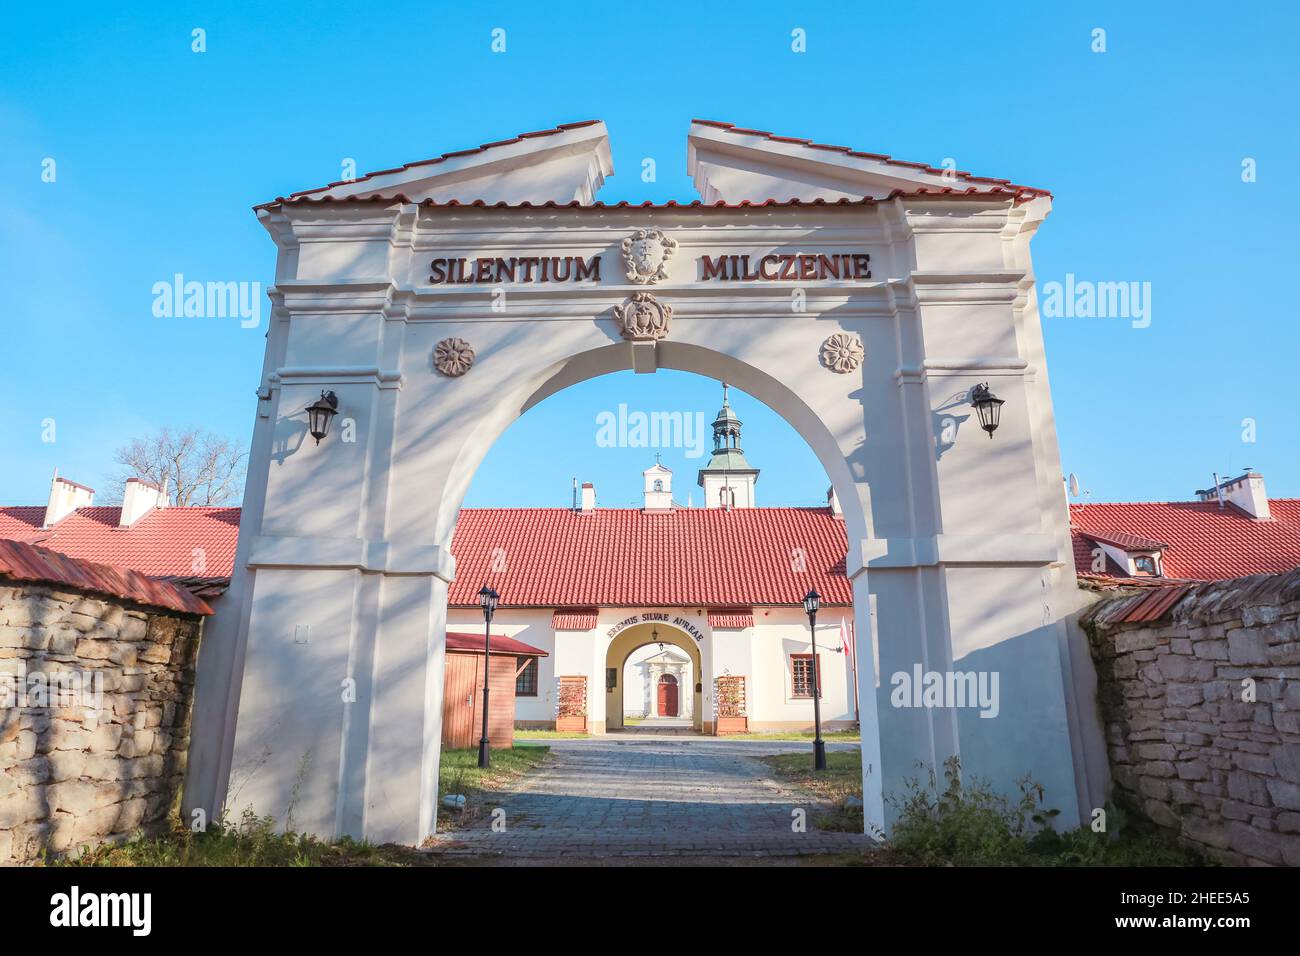 Rytwiany, Polonia. 11 de noviembre de 2021. Puerta 'Silence' - entrada al Golden Forest Hermitage en Rytwiany. Crédito: Waldemar Sikora Foto de stock